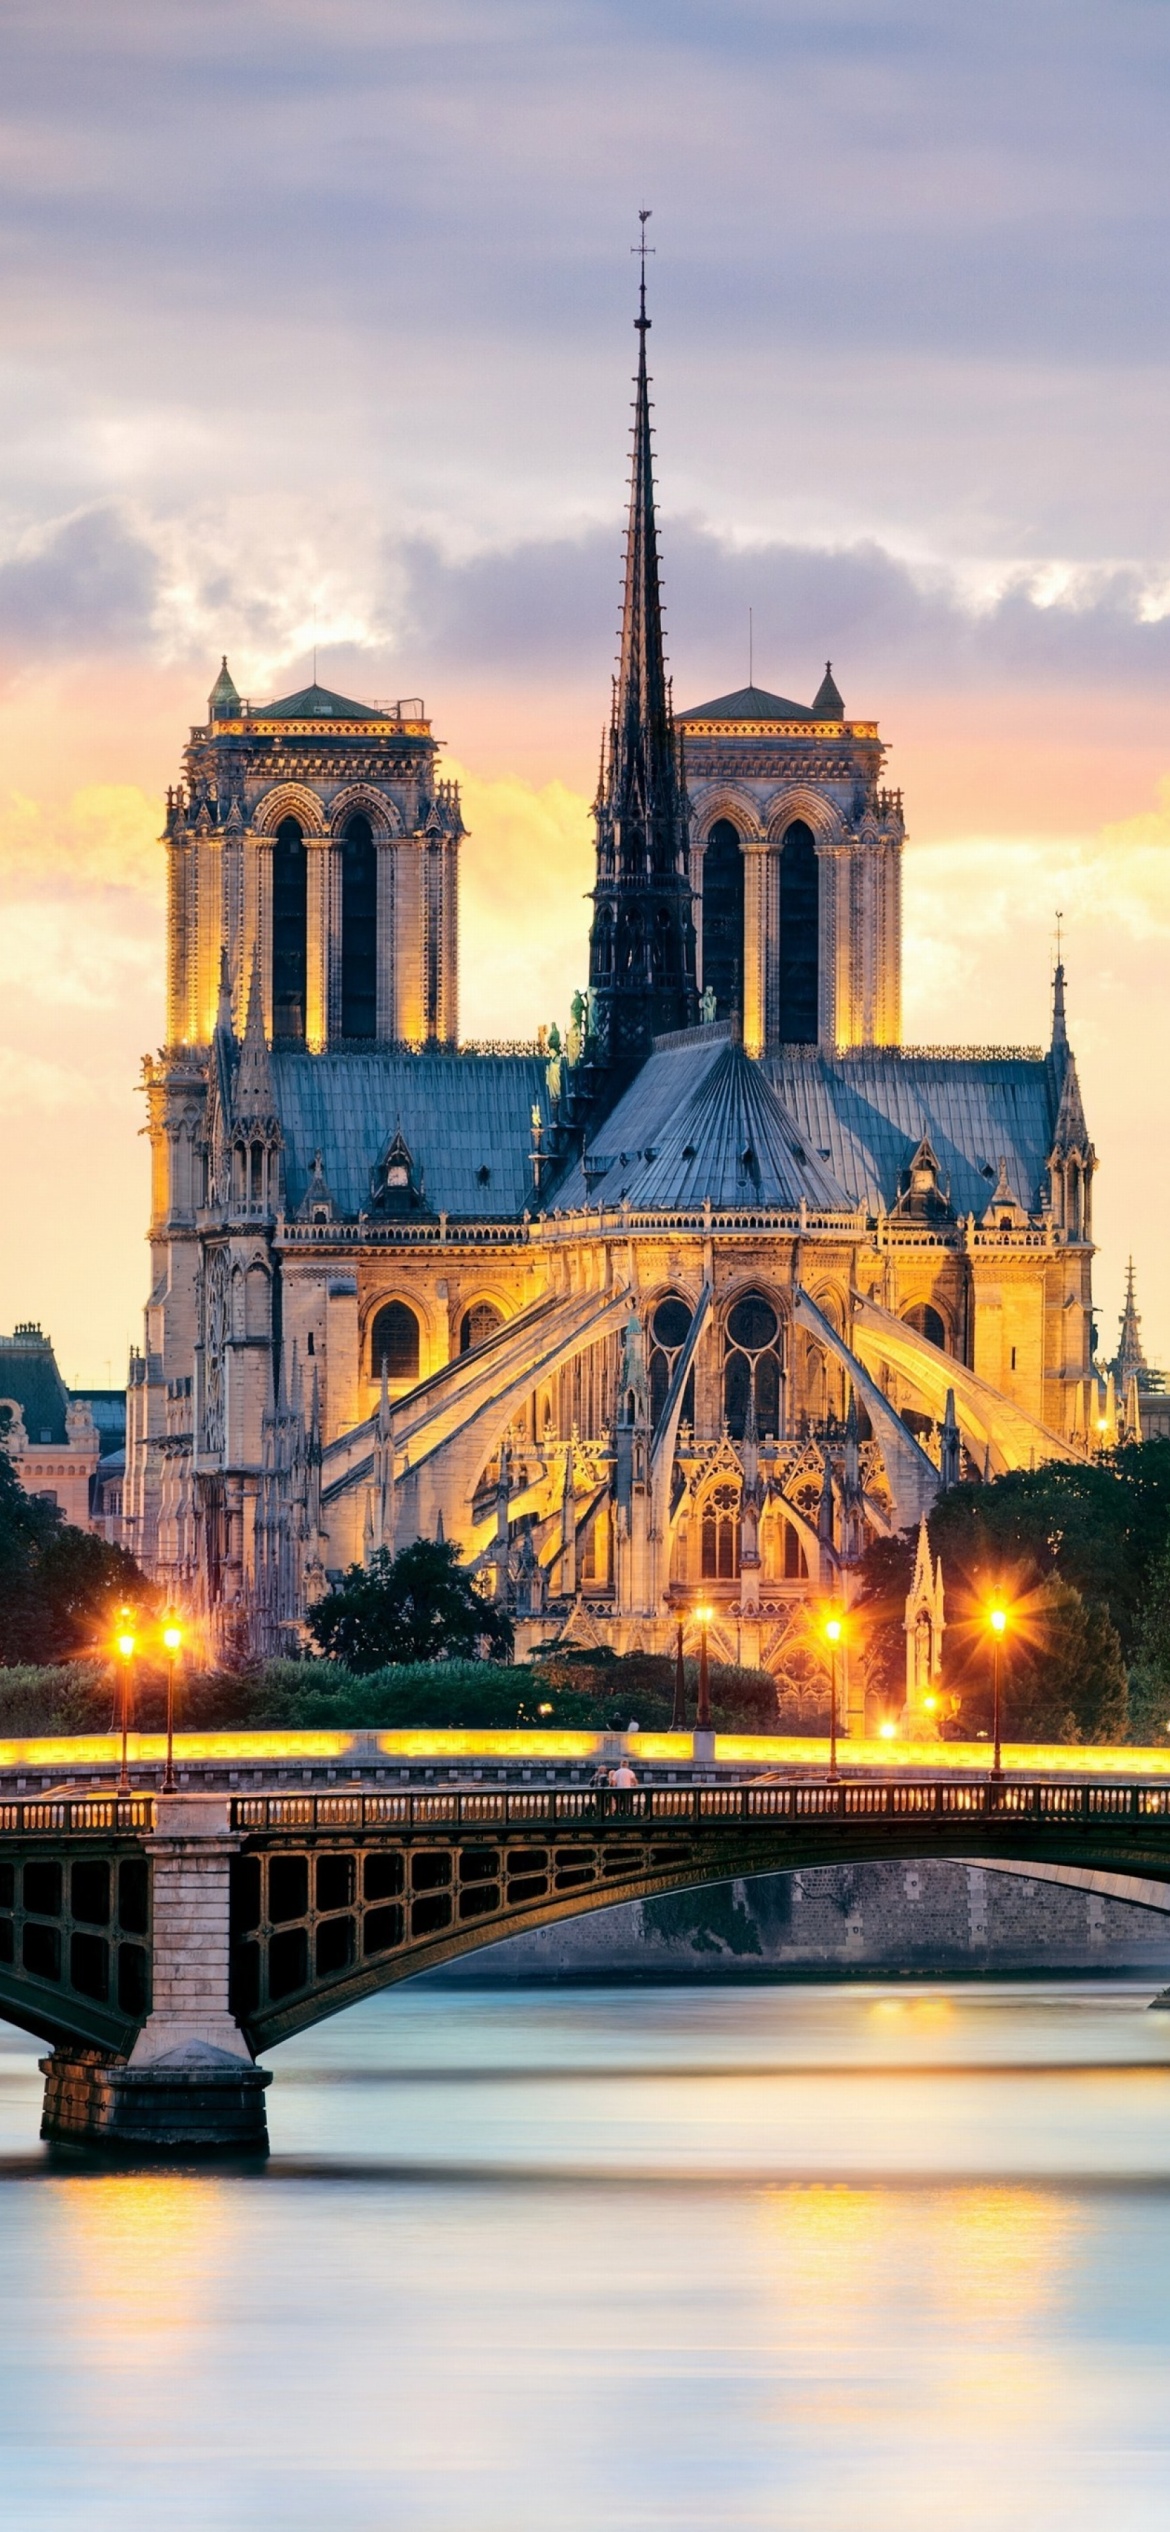 Notre Dame de Paris Catholic Cathedral wallpaper 1170x2532